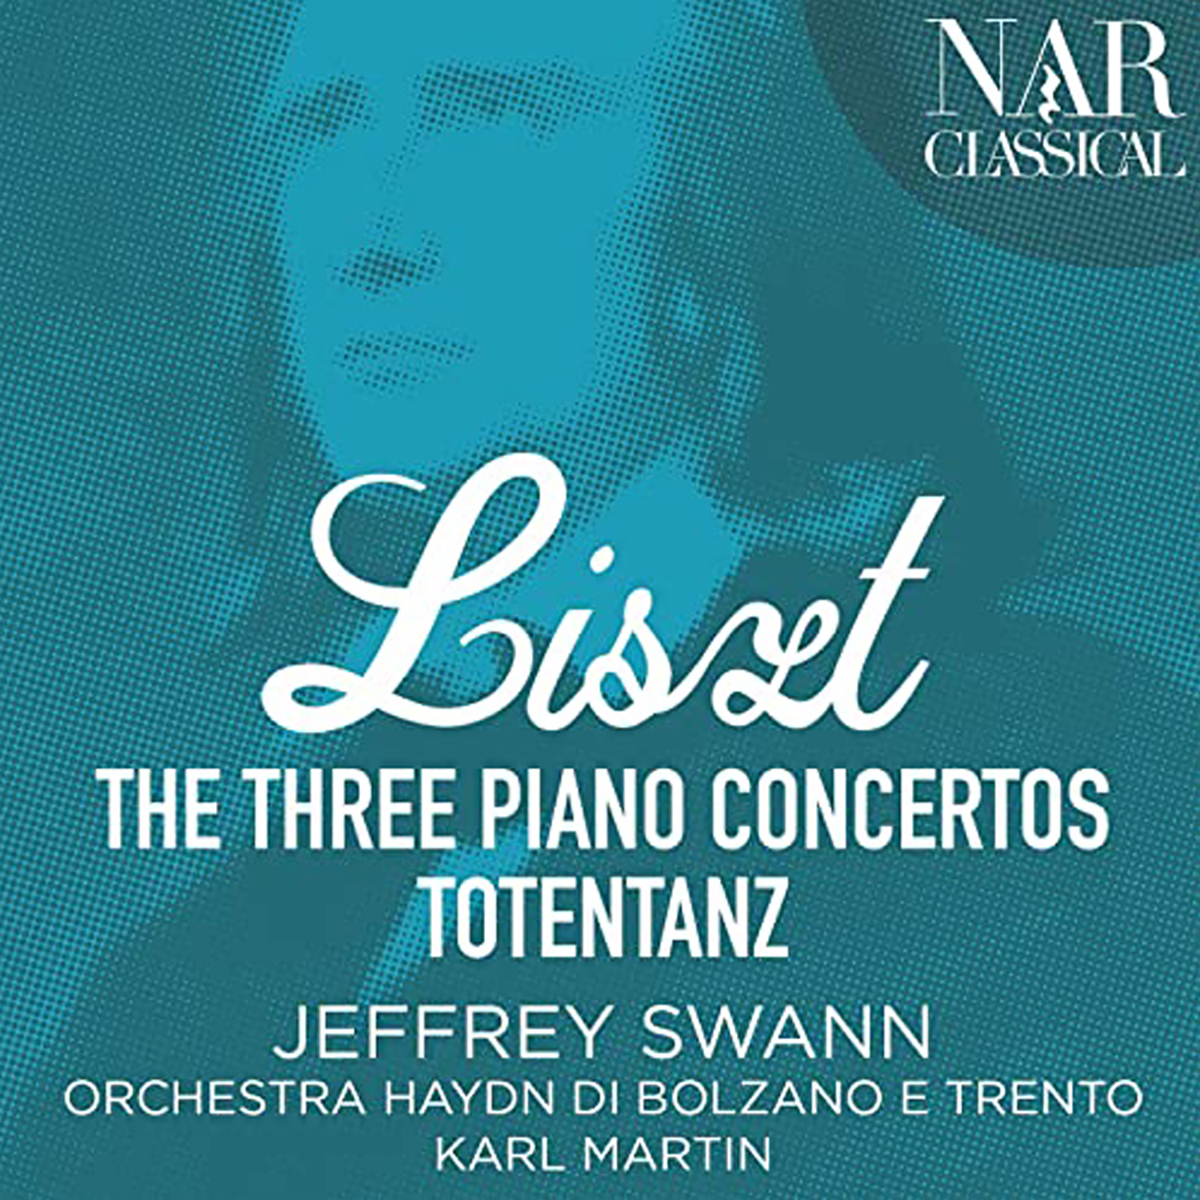 Franz Liszt - The Three Piano Concertos (Totentanz)